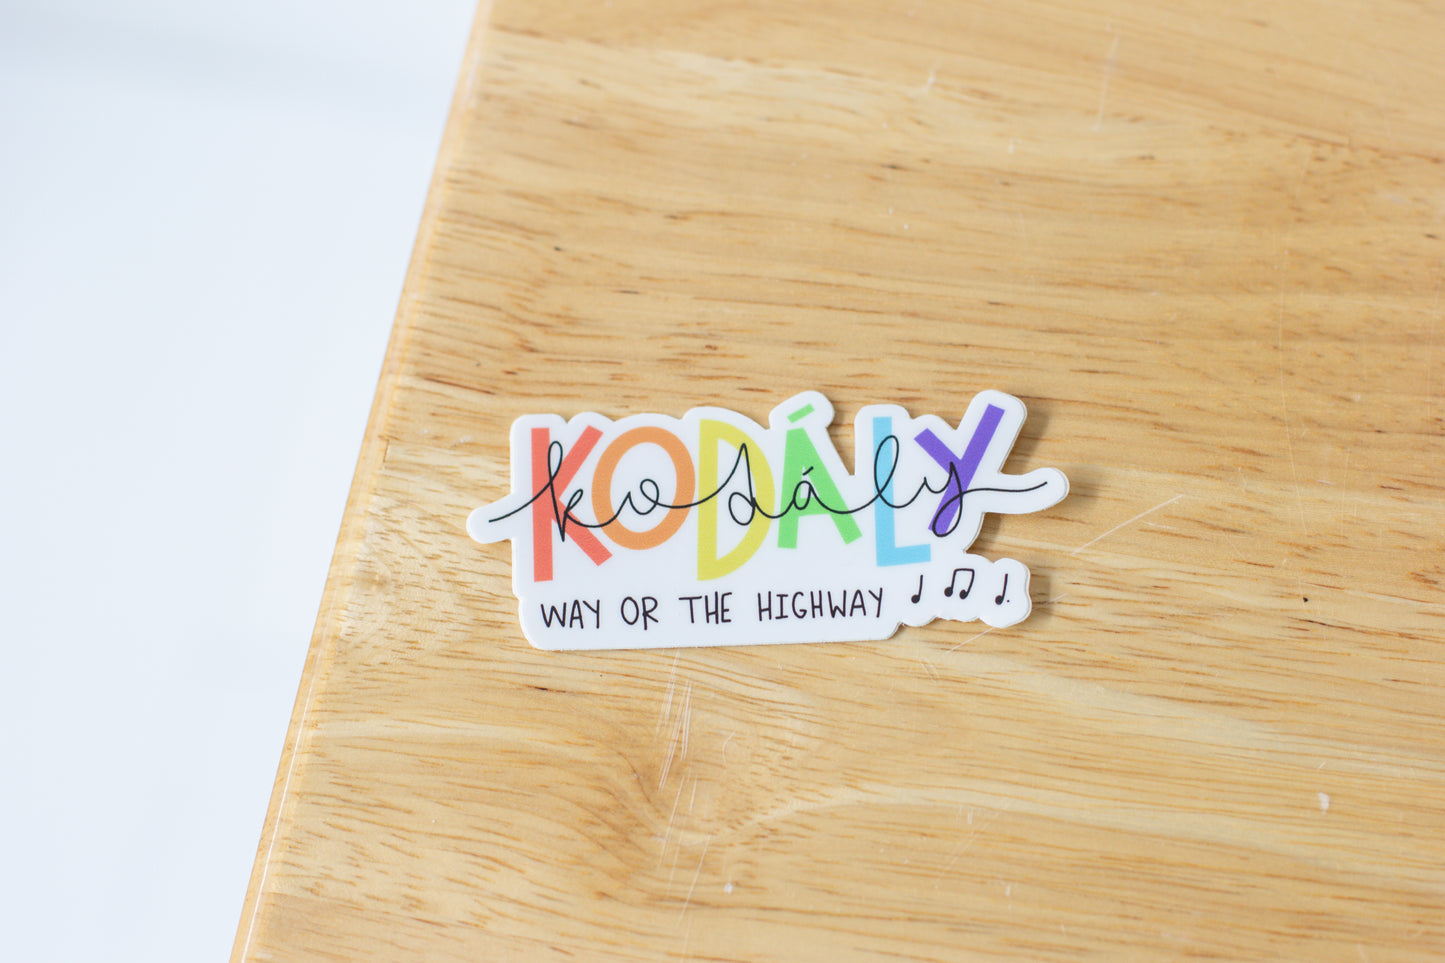 Kodaly Sticker